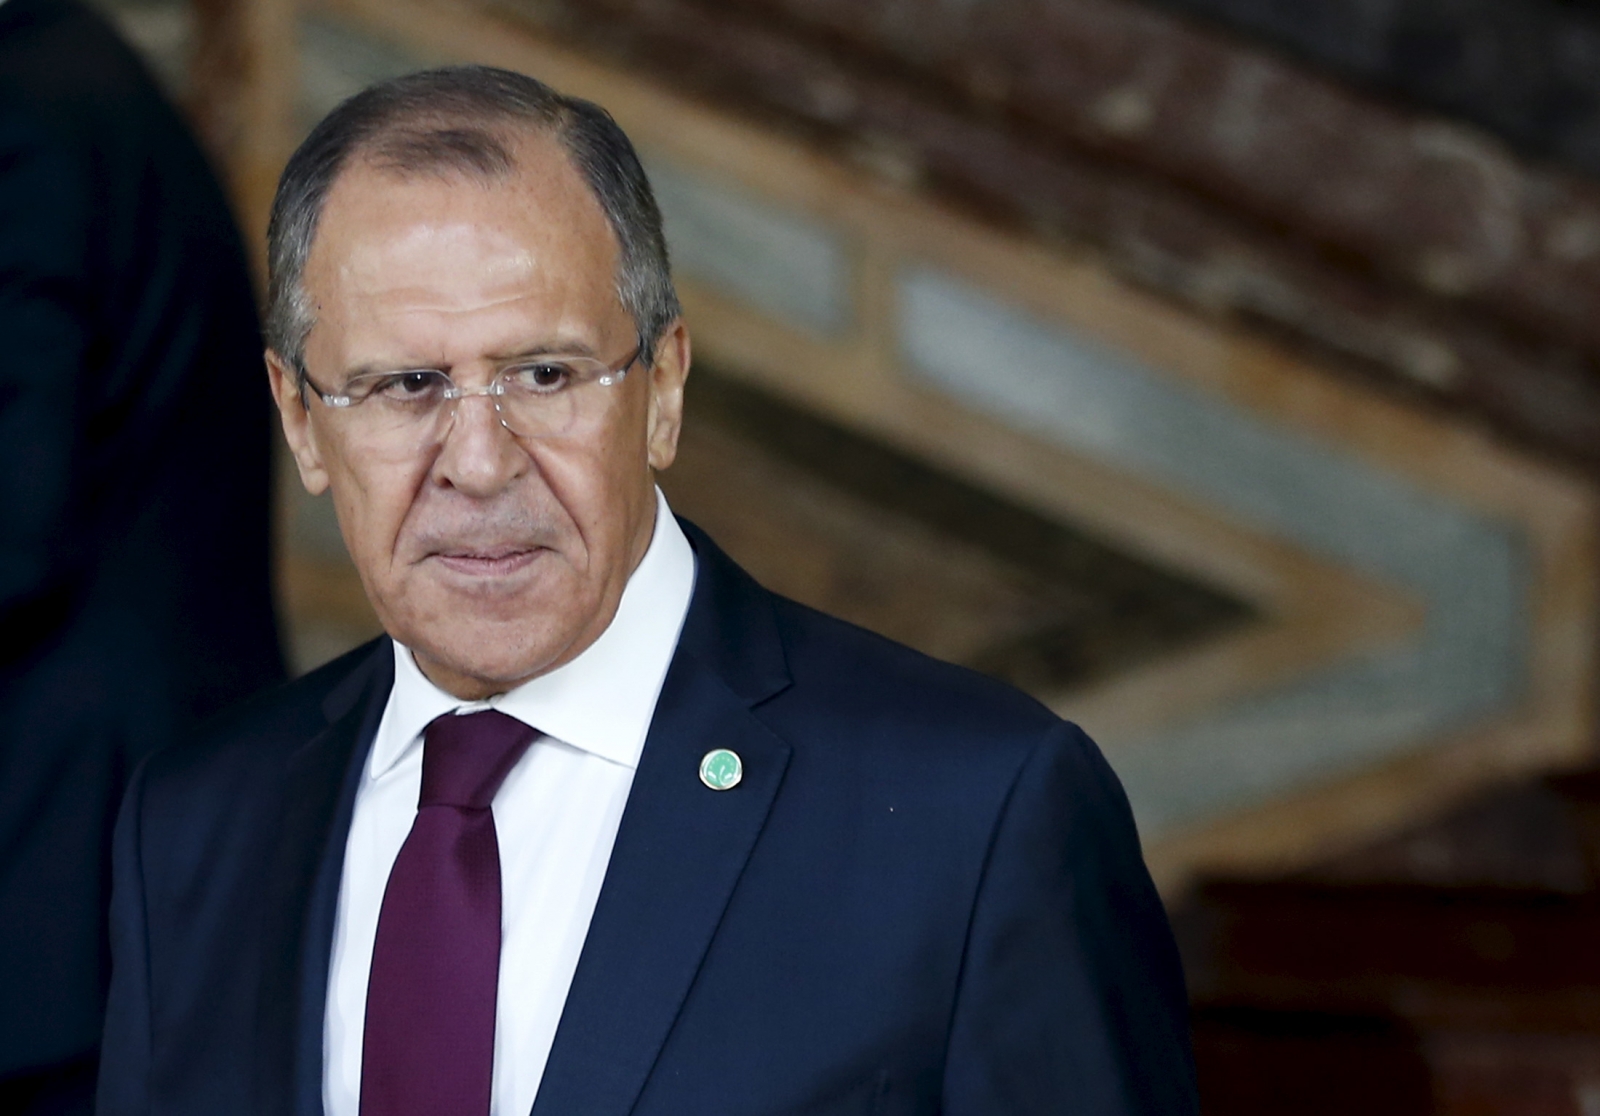   وزير خارجية روسيا يدعو مصر لإجراءات مشتركة ضد الإرهاب